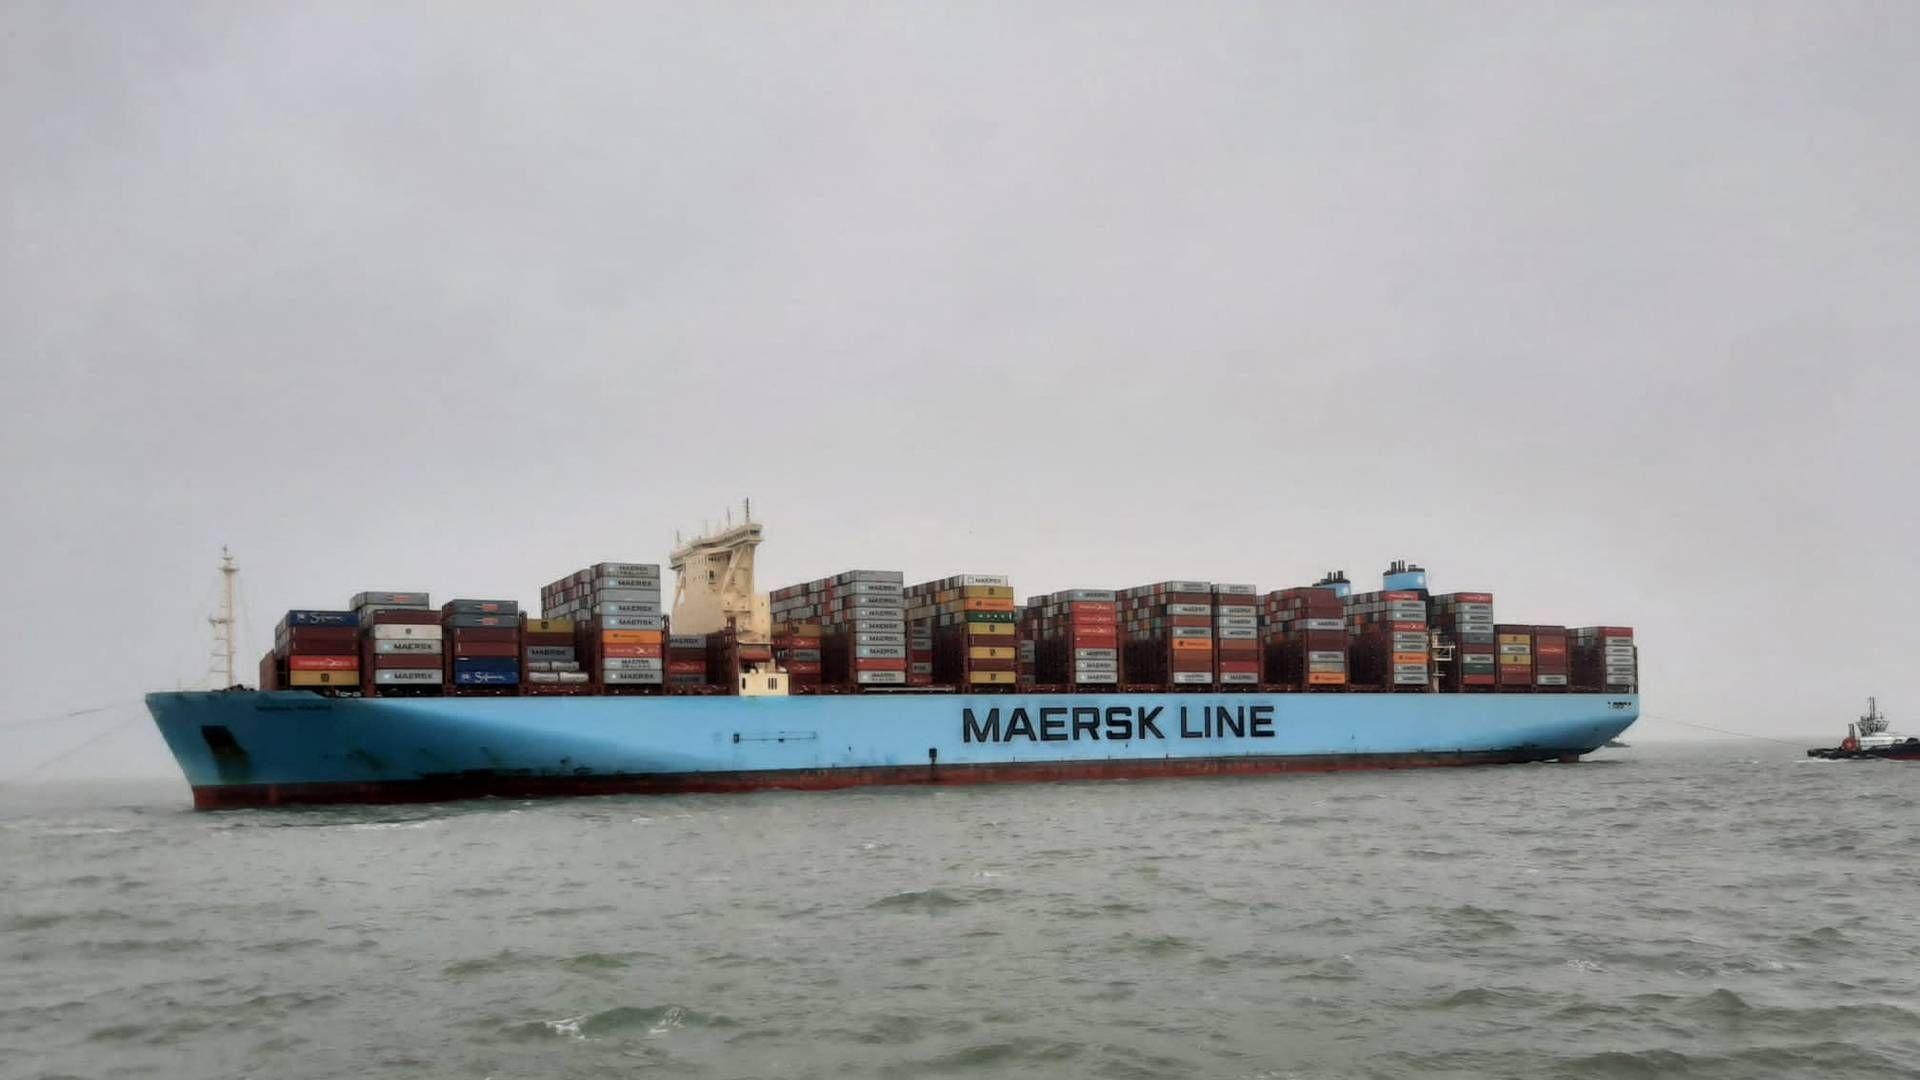 "Eksport også omfatter søtransport. Når et dansk skib fragter varer fra Kina til USA, så tæller fragtindtægterne med i statistikken i dansk favør," fortæller Allan Sørensen, der er cheføkonom i Dansk Industri. | Foto: HAVARIEKOMMANDO/VIA REUTERS / X80001